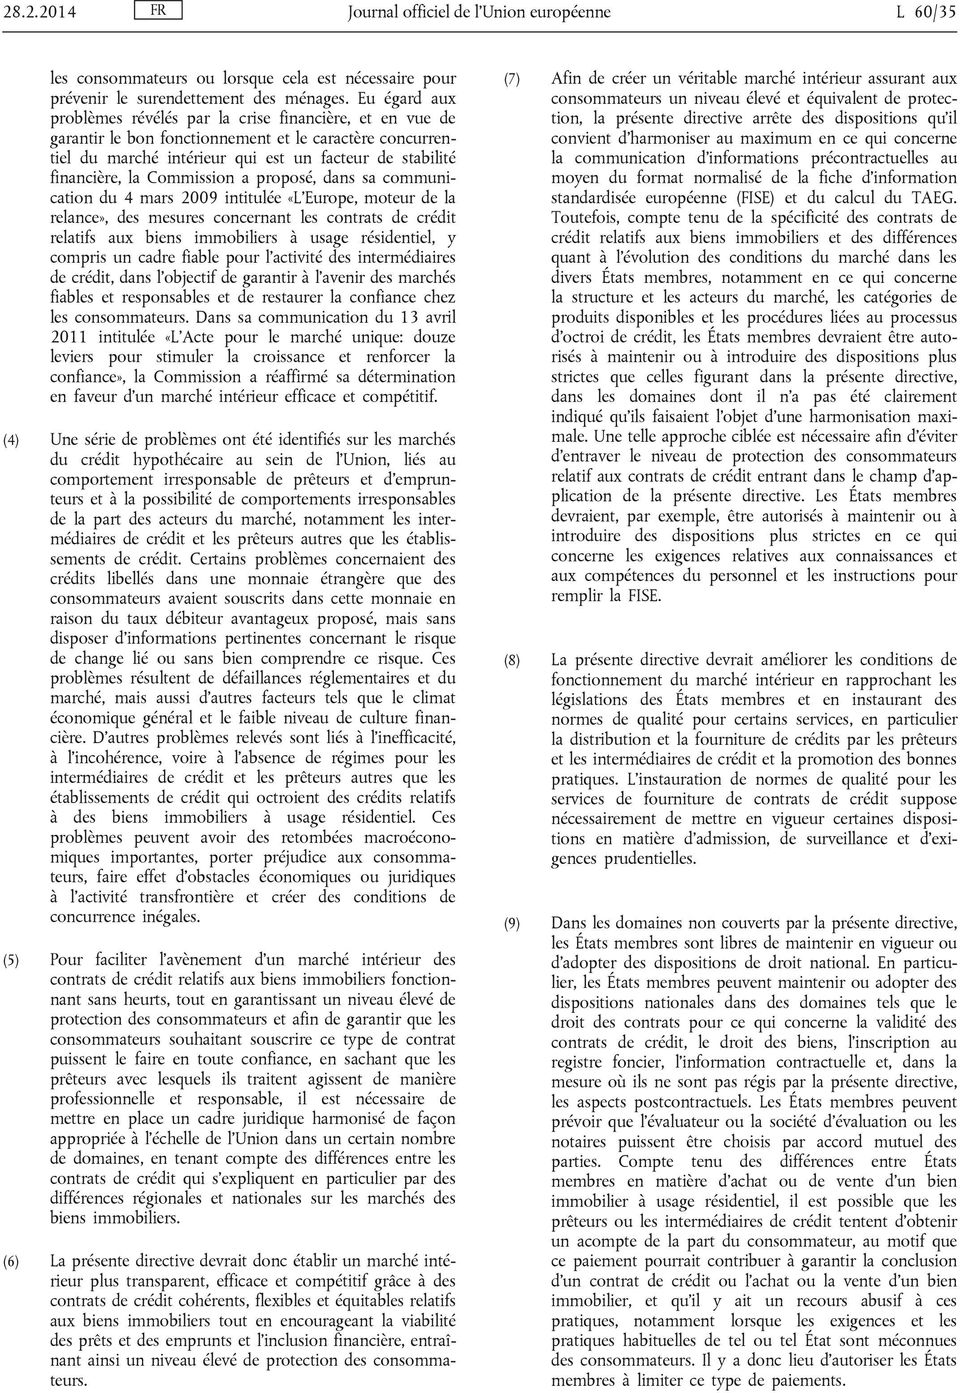 Commission a proposé, dans sa communication du 4 mars 2009 intitulée «L Europe, moteur de la relance», des mesures concernant les contrats de crédit relatifs aux biens immobiliers à usage